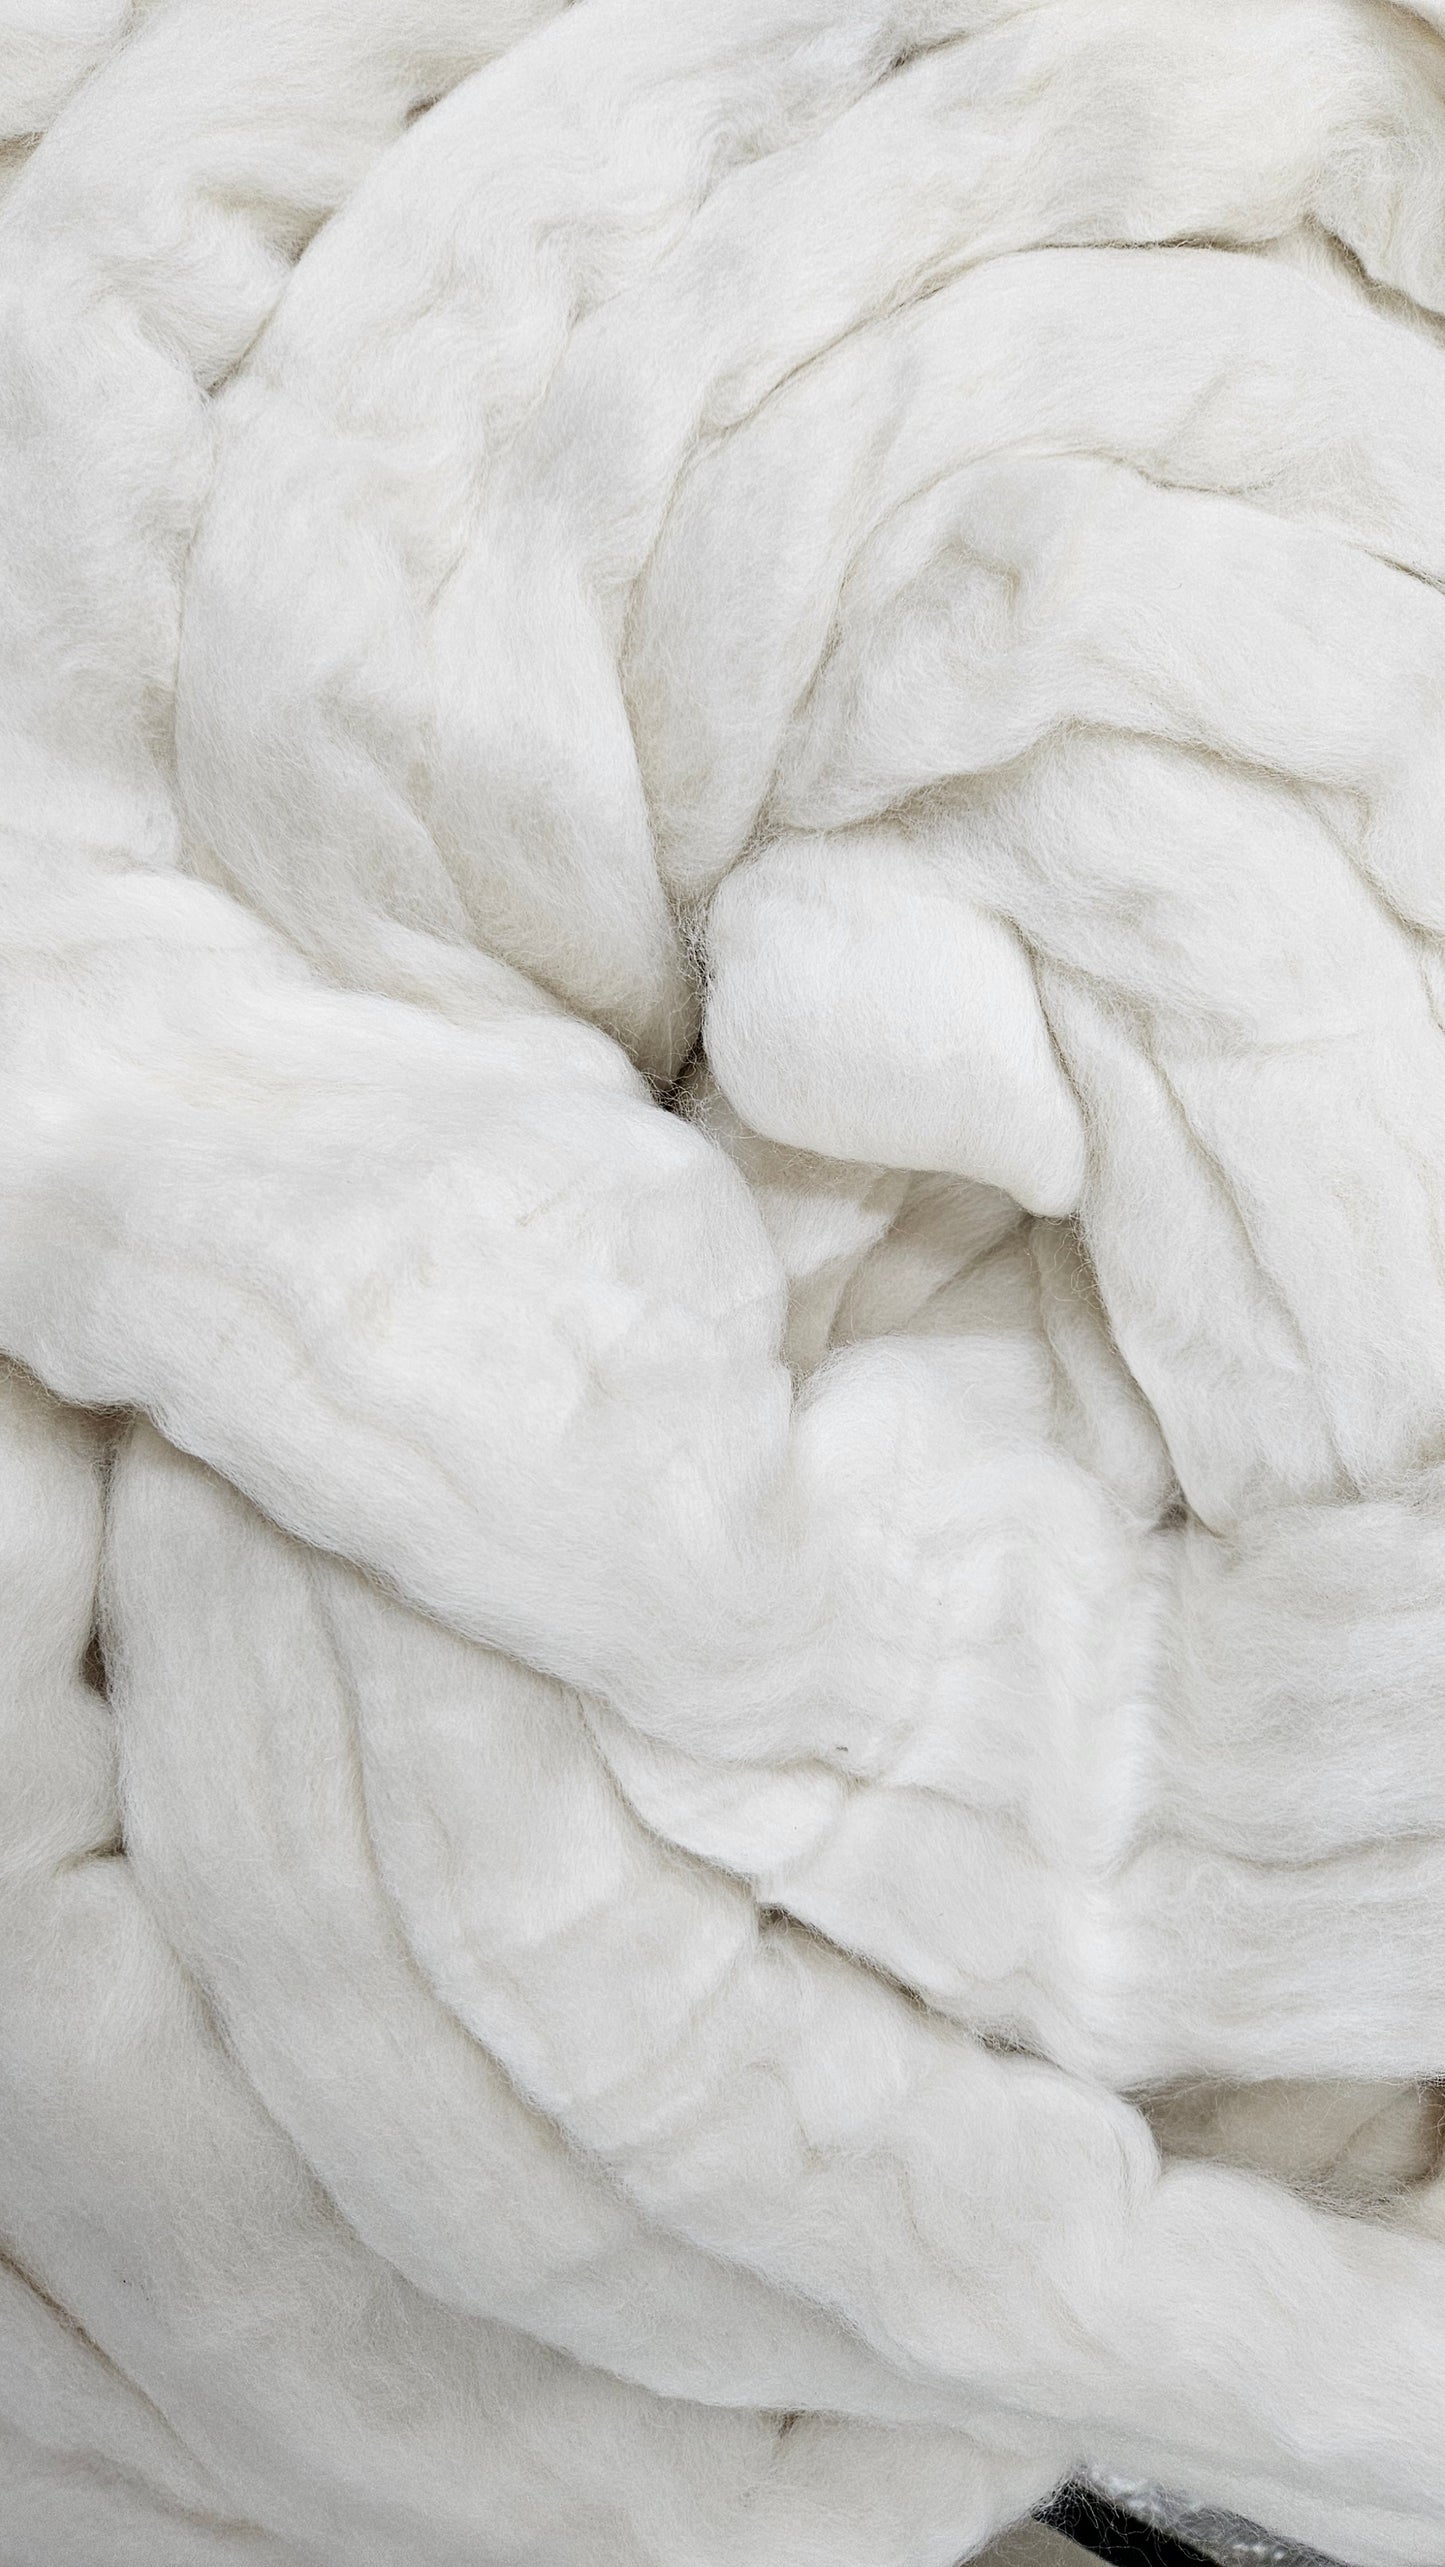 ORGANIC MERINO - Natural Wool Top Beginner Spinning Felting Carding Dyeing - 6 oz White